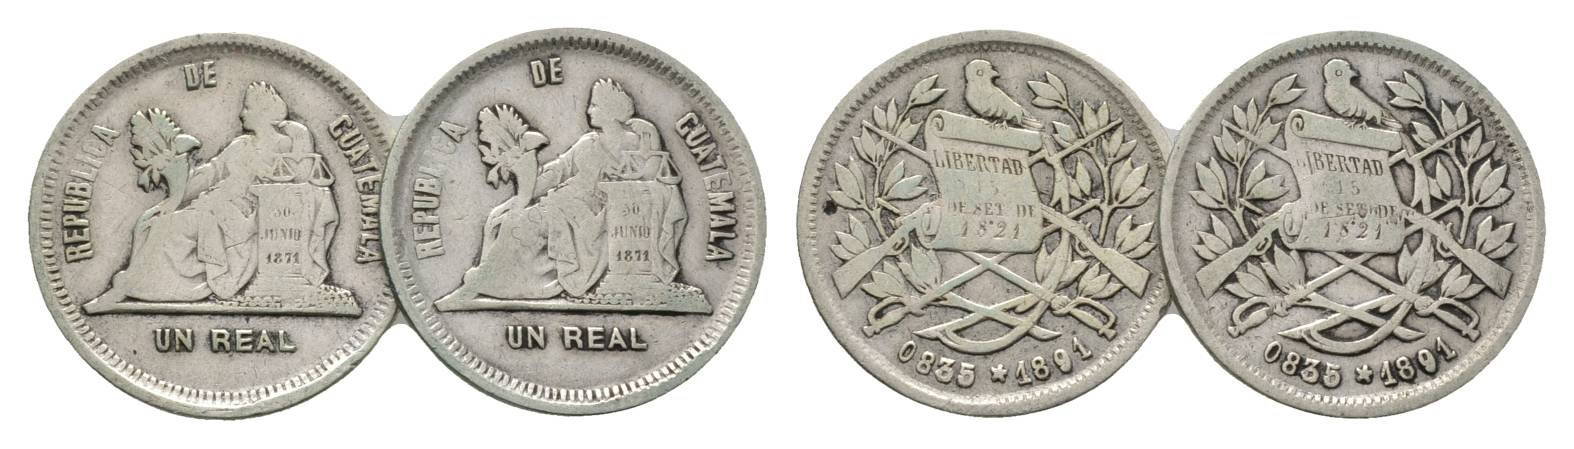  Guatemala, 1 Real, 1891   